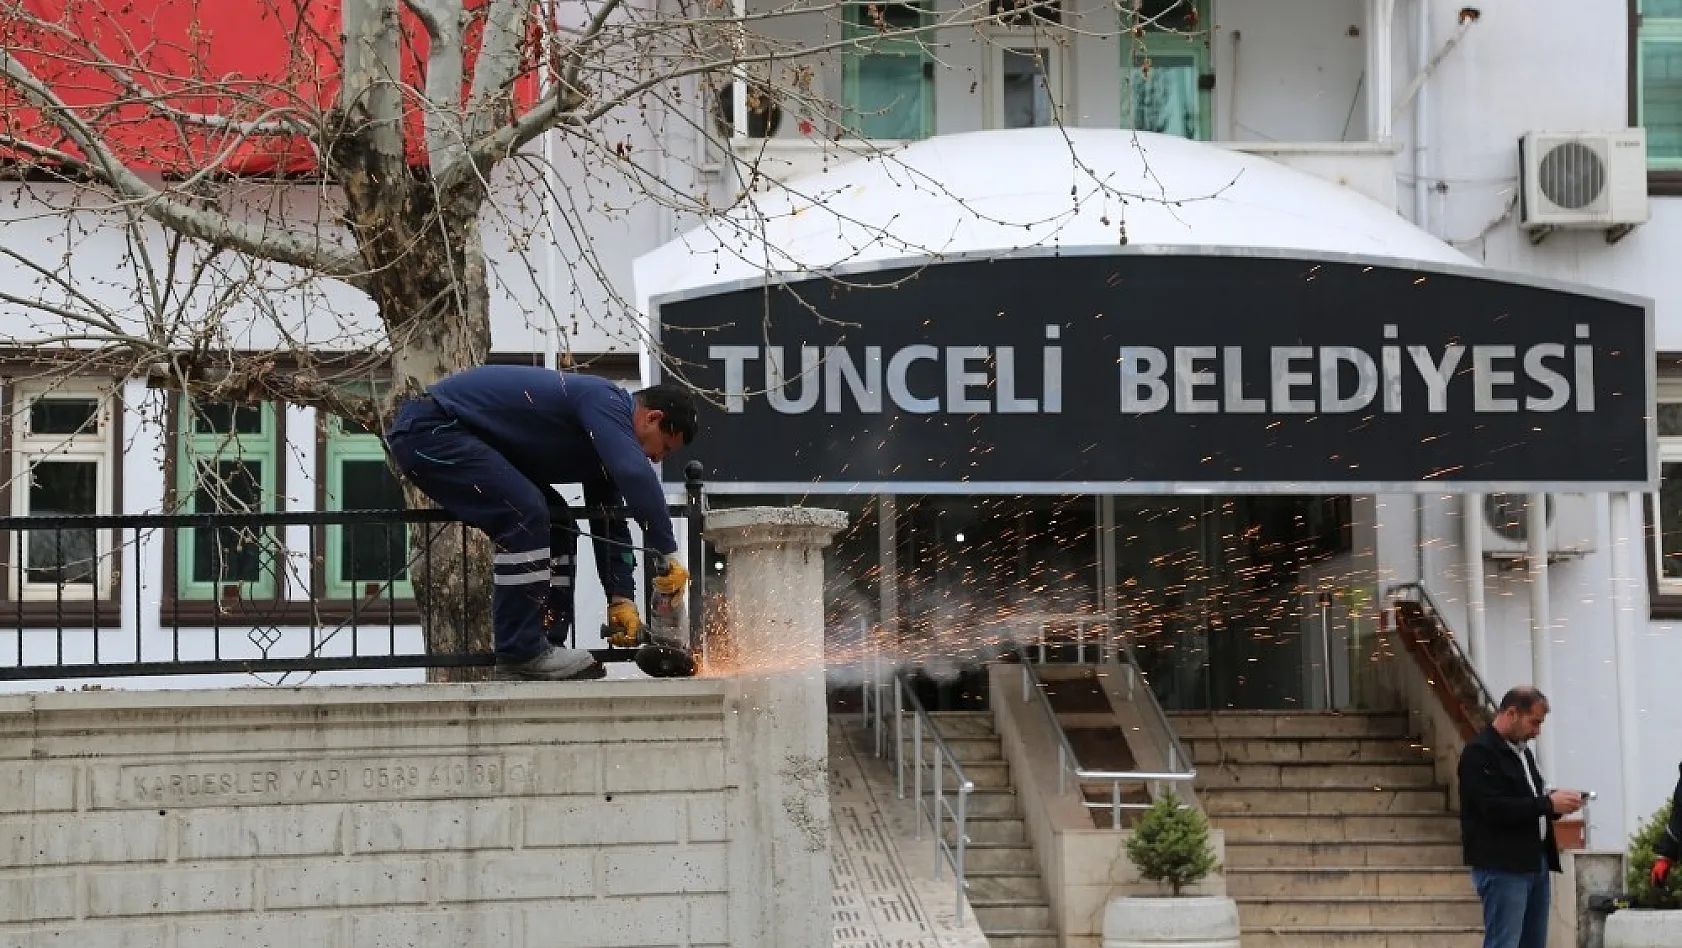 Tunceli'de komünist başkan, belediye önündeki duvarı yıktırdı 